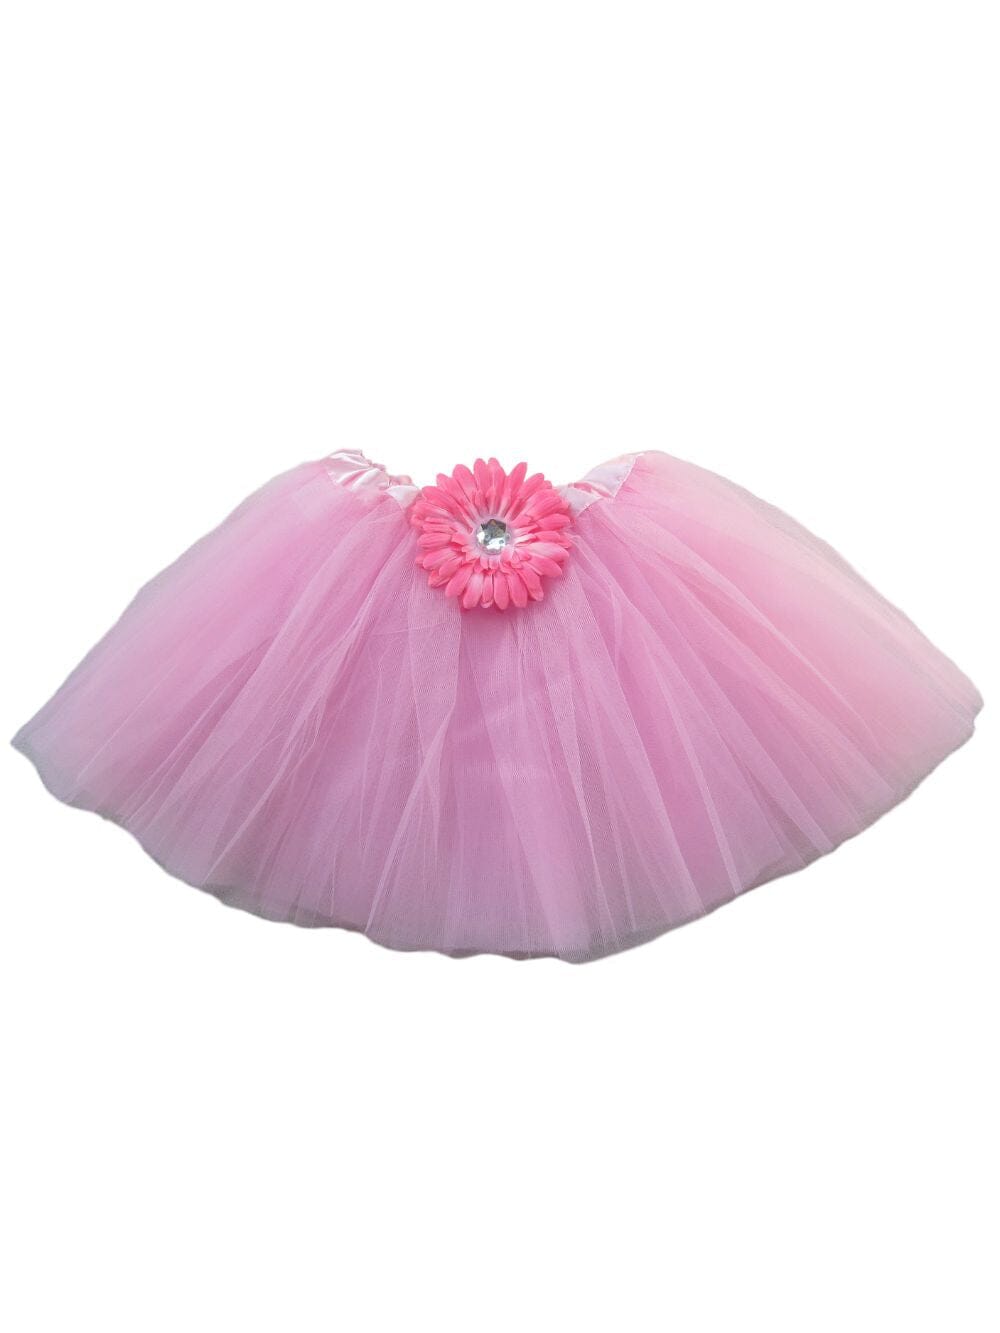 Pink Gerbera Daisy Flower Girls Tutu Skirt - Kids Size Tulle Ballet Dance Costume Tutus - Sydney So Sweet